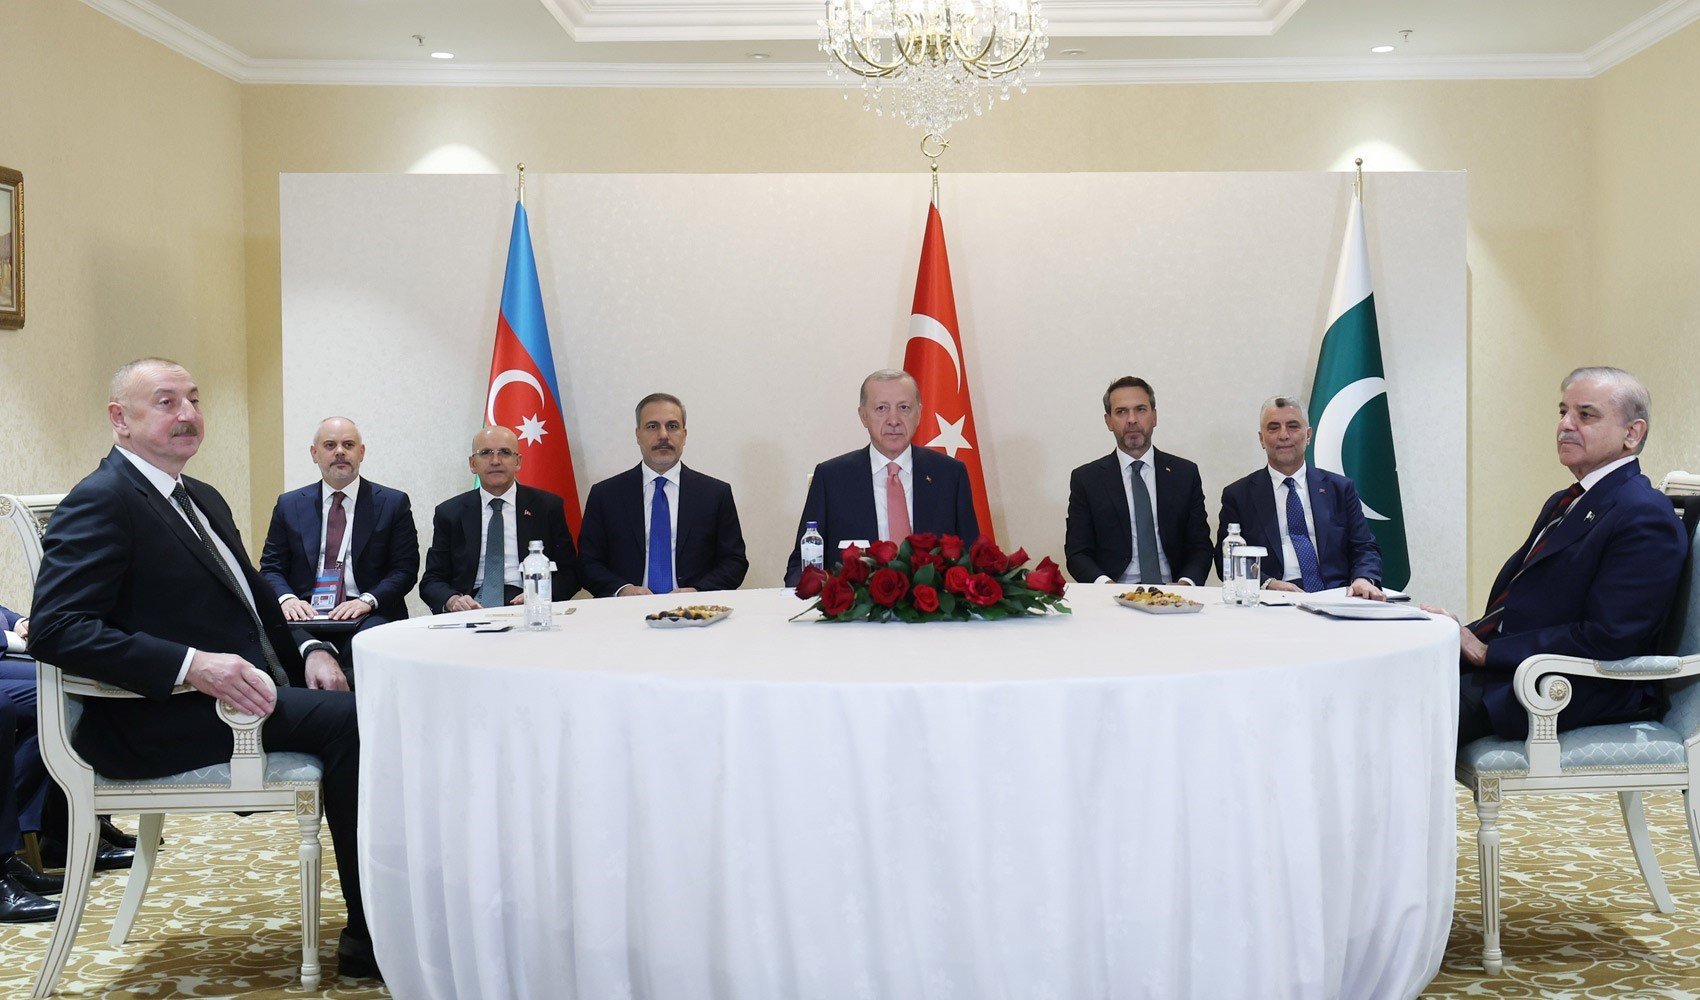 İletişim Başkanlığı'ndan Türkiye-Azerbaycan-Pakistan üçlü toplantısına ilişkin açıklama